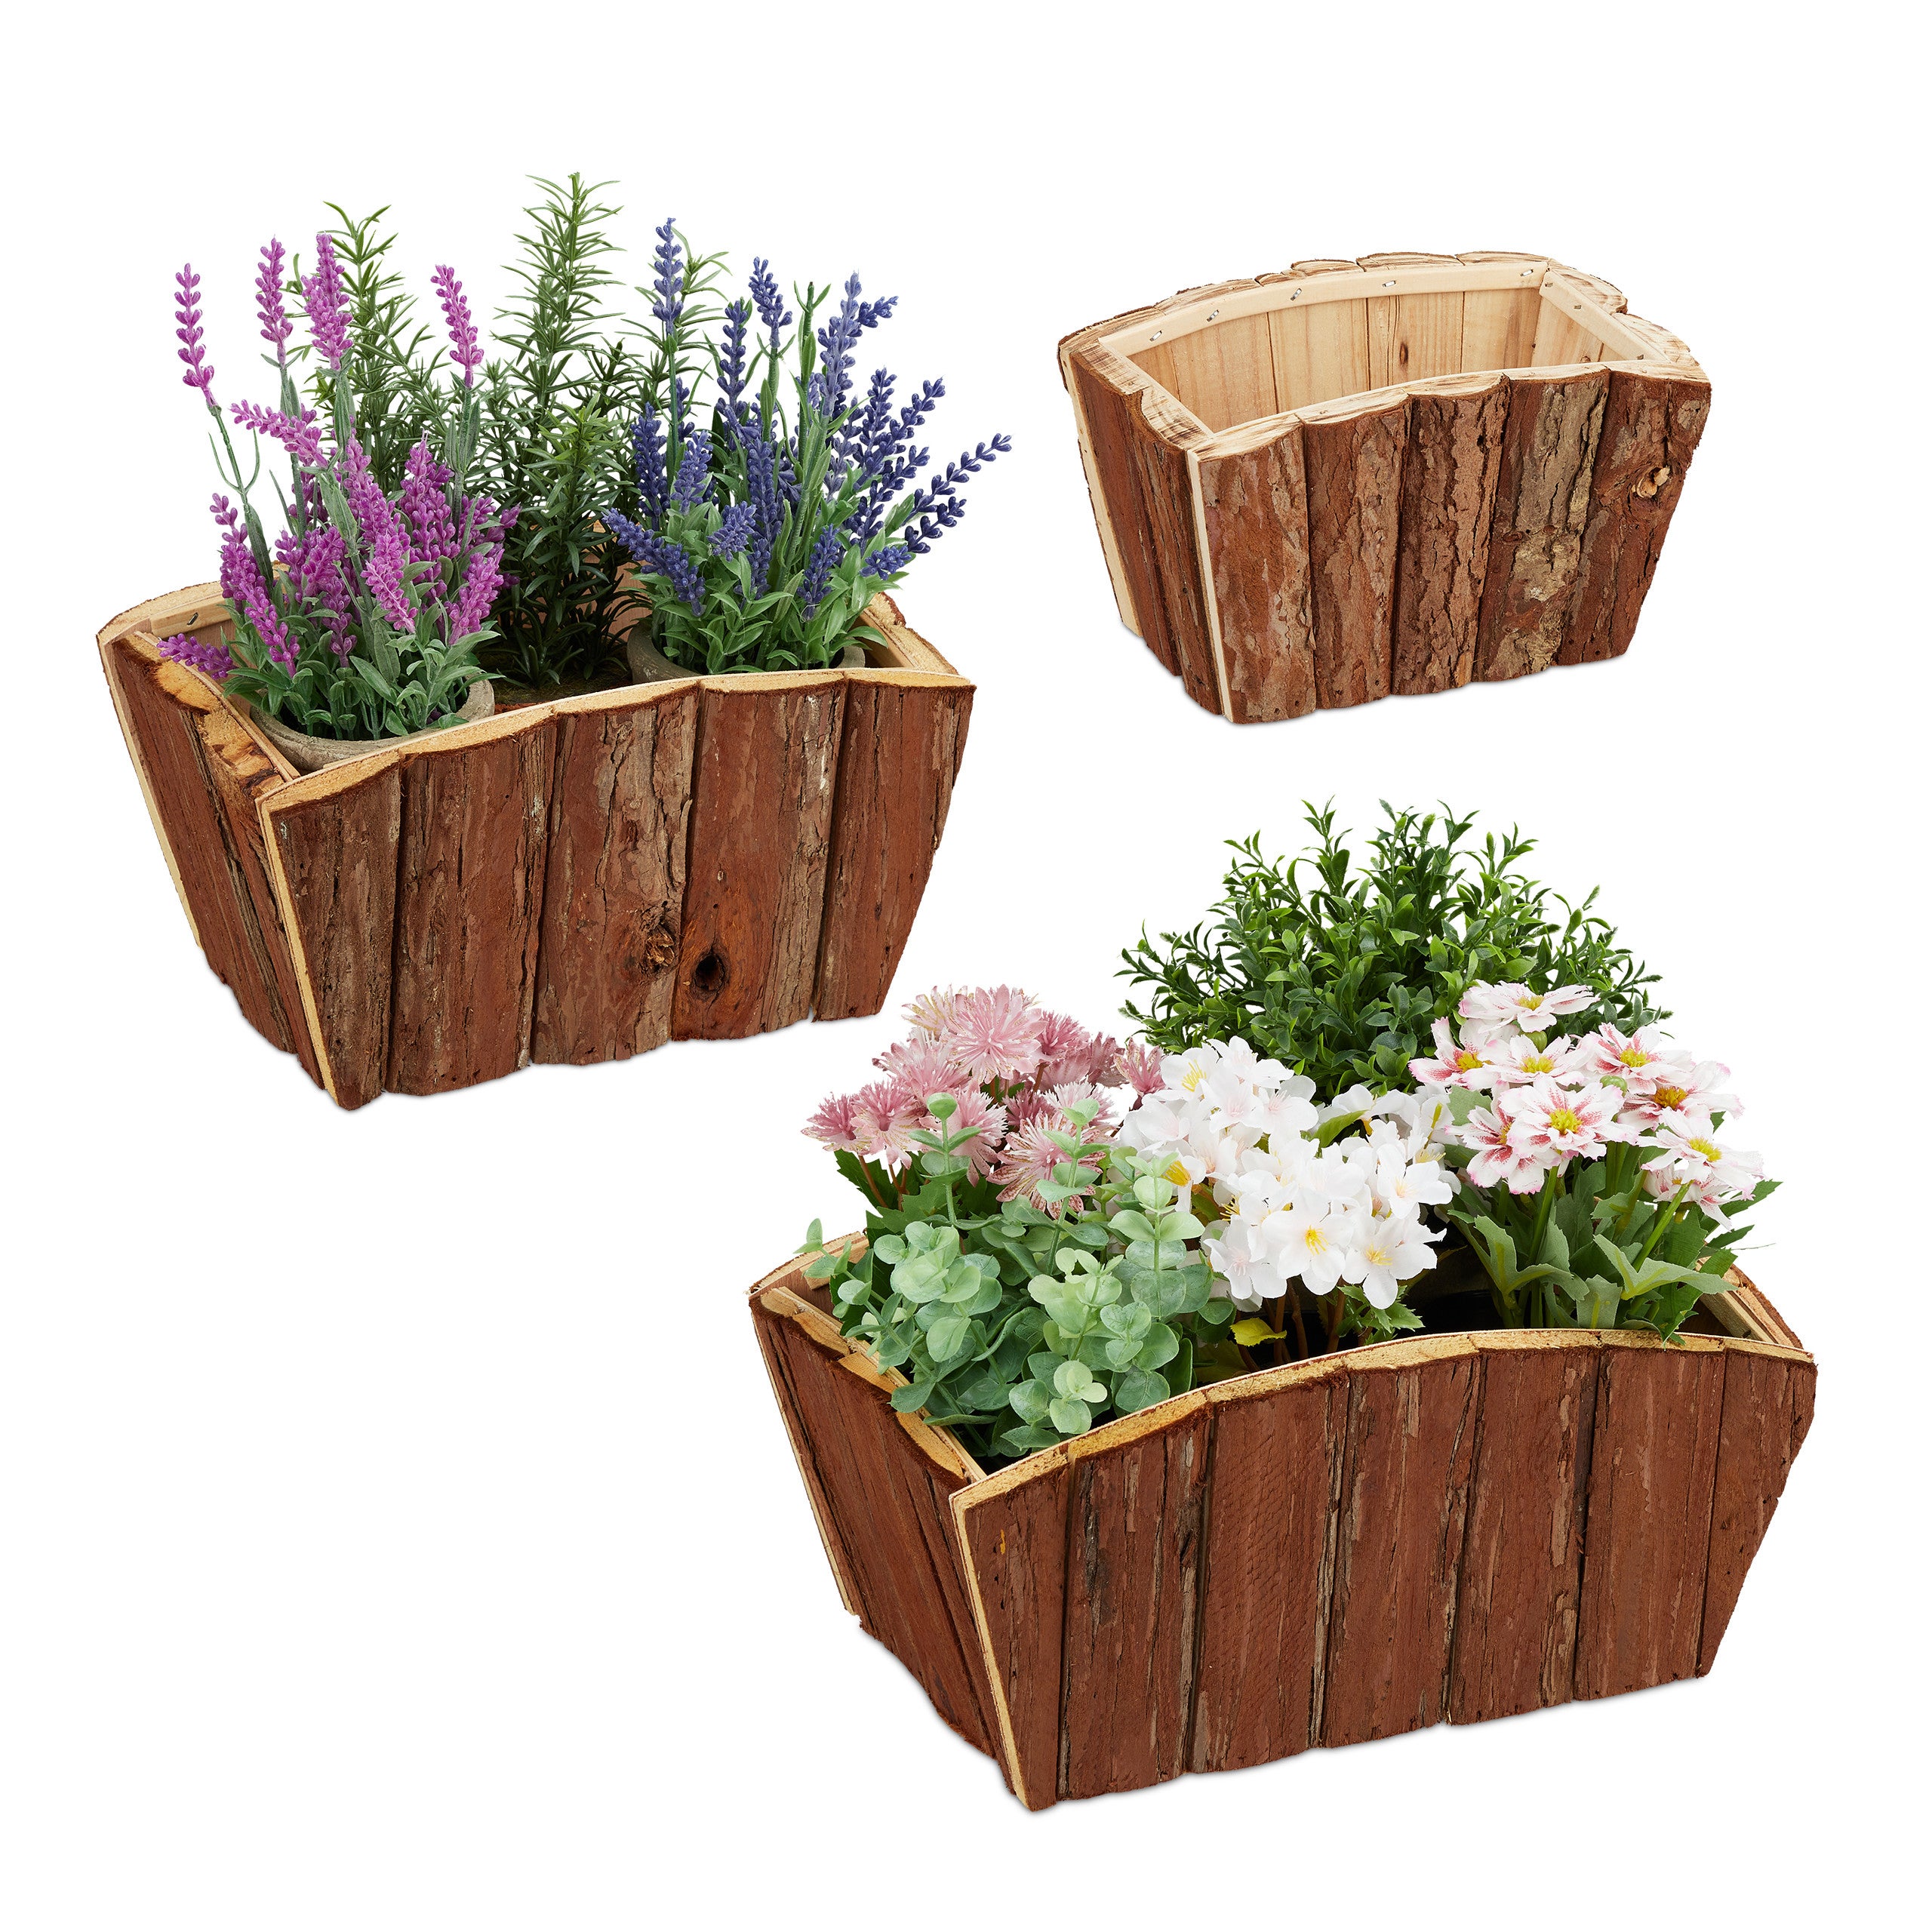 Relaxdays Pots de fleurs extérieur, lot de 3, bois naturel avec